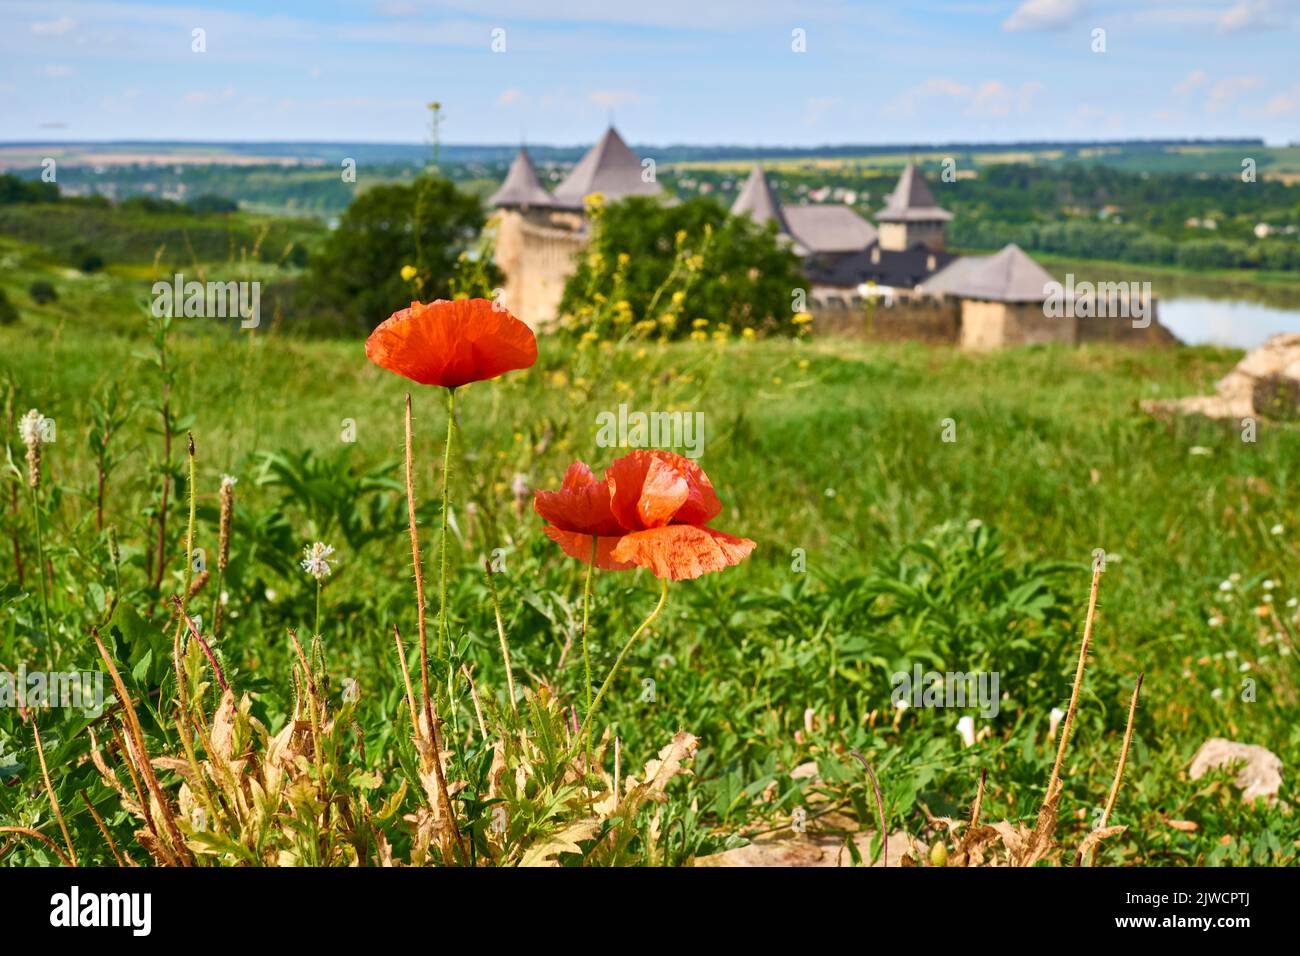 Zwei rote scharlachrote Mohnblumen, ein grünes Feld und eine alte Festungsburg am Fluss Stockfoto